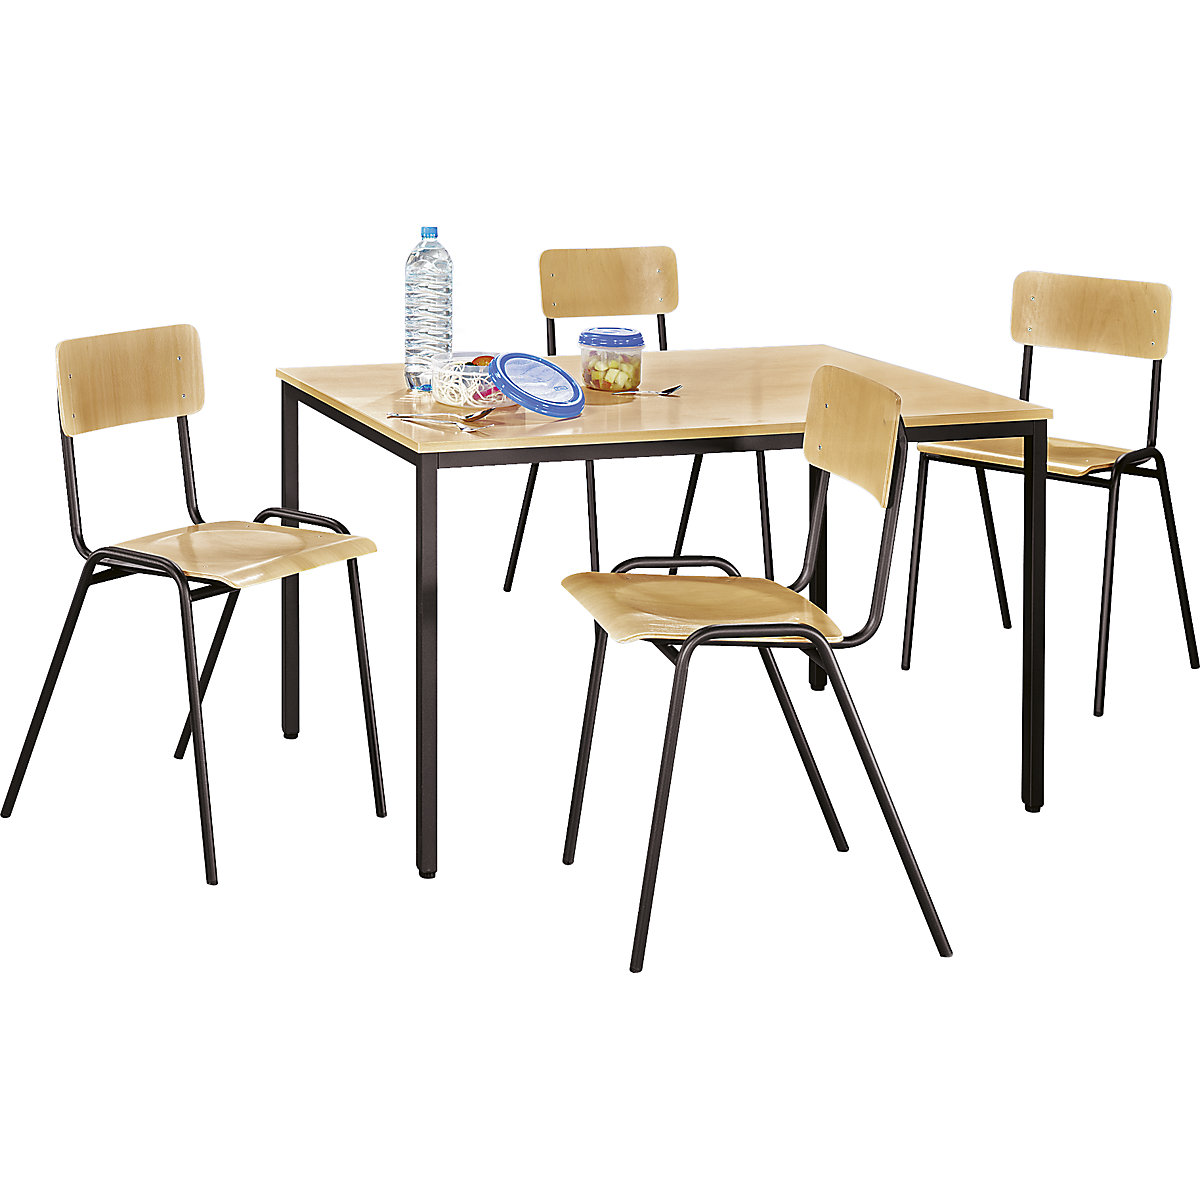 Višenamjenska garnitura za sjedenje – eurokraft basic, 1 stol, 4 stolice, ploča stola u imitaciji bukve, postolje u sivosmeđoj boji-8